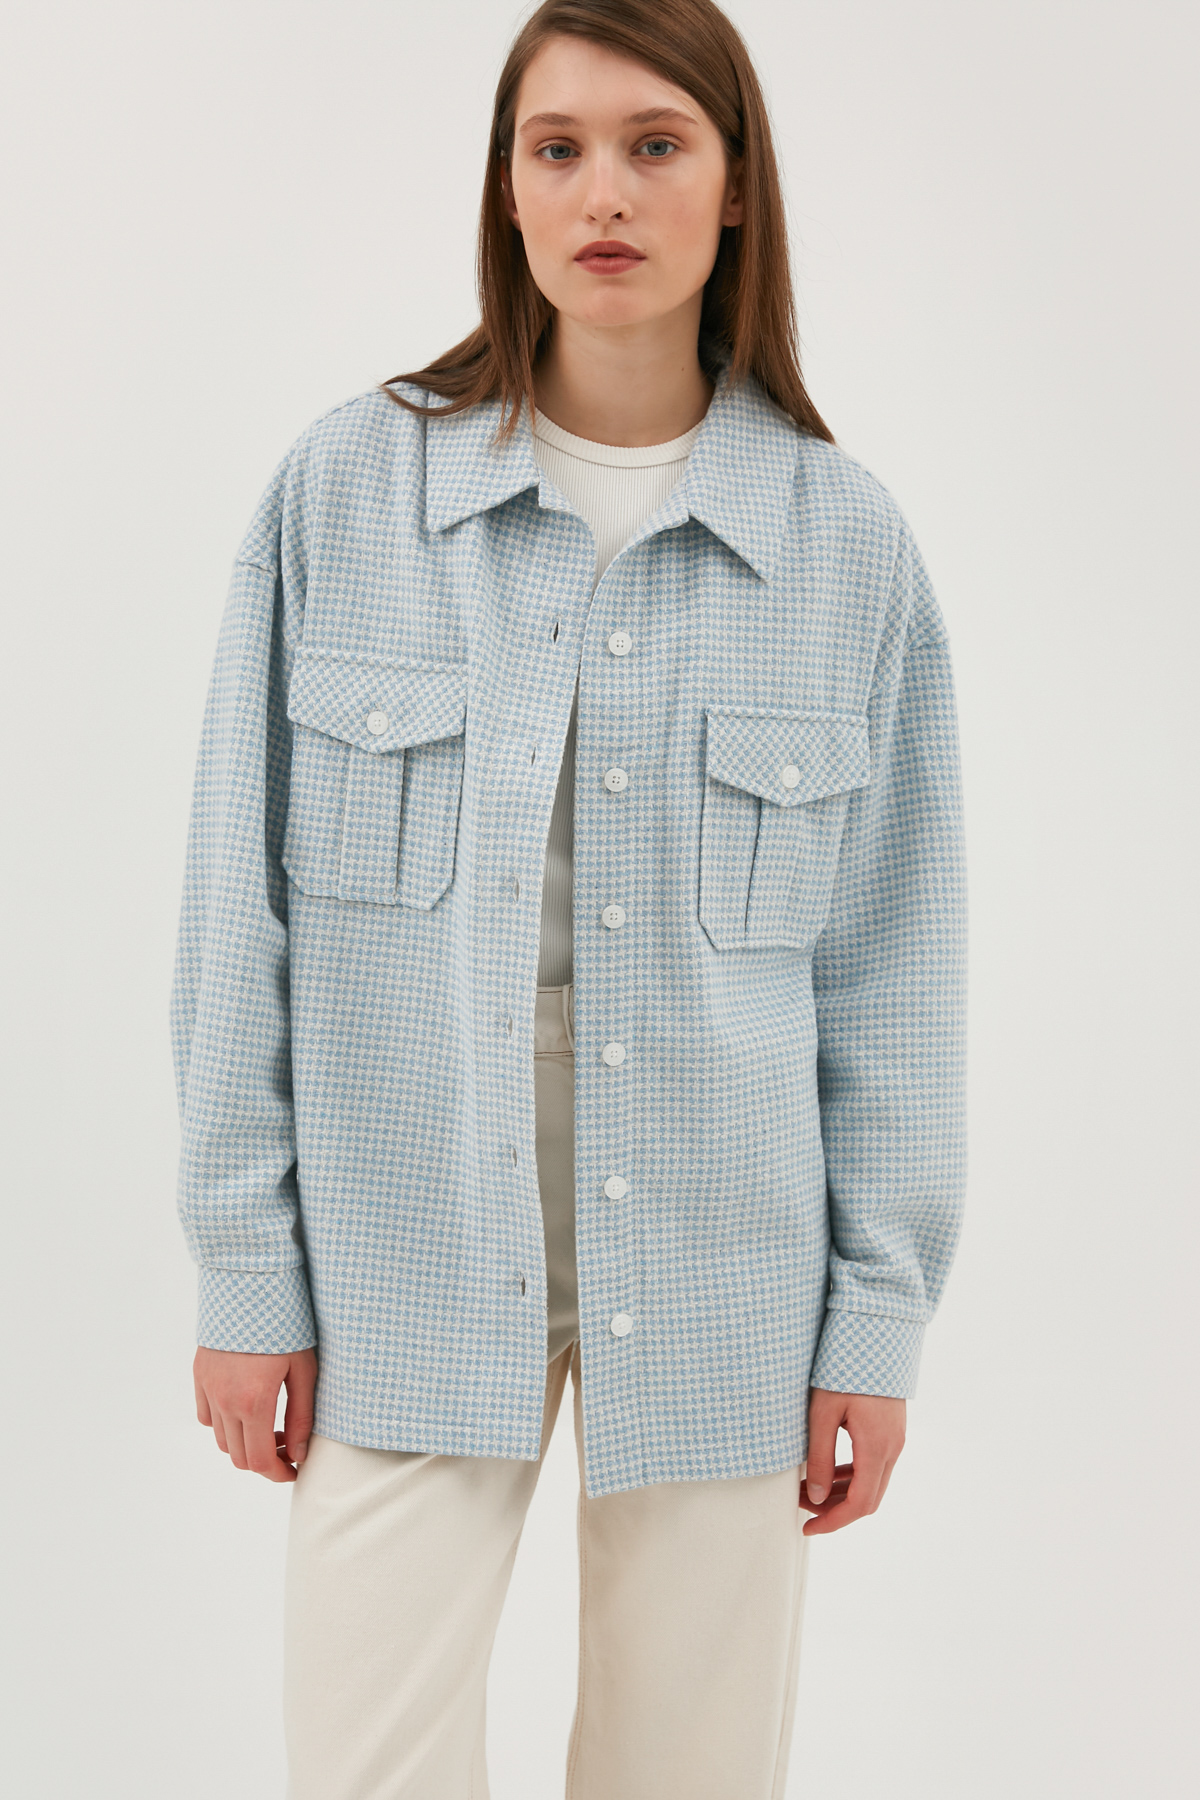 Blue-white plaid flannel top shirt, photo 4